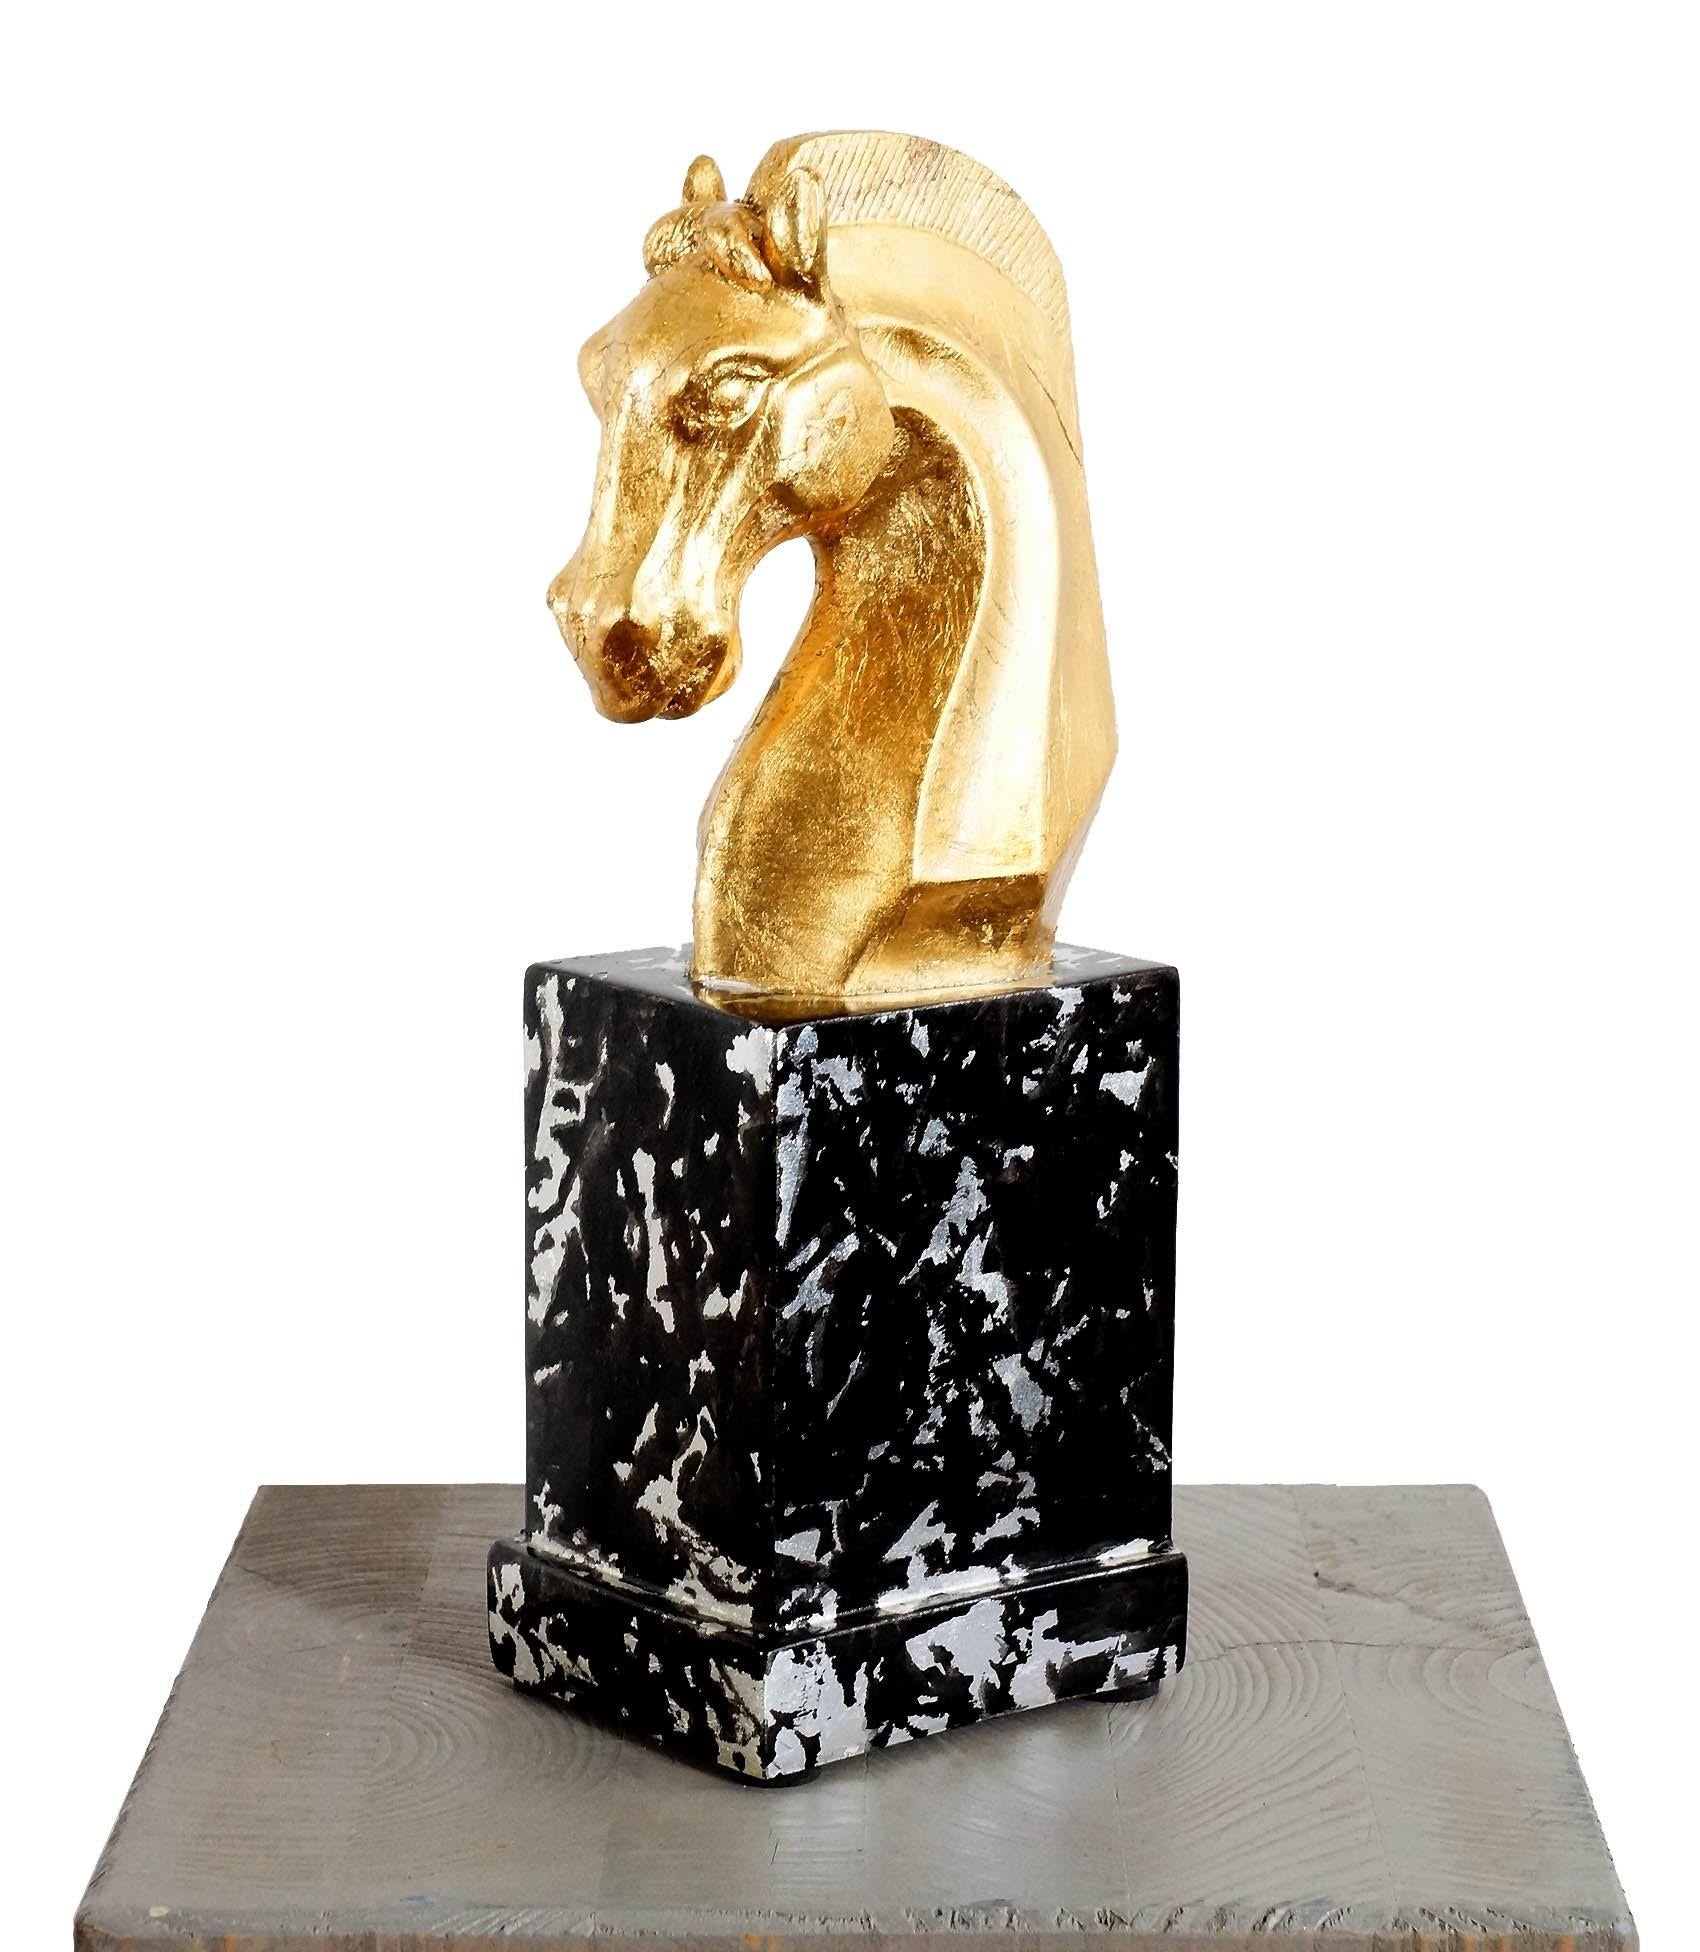 Sculpture en fibre de verre représentant un buste de cheval doré, sculpture animalière, production moderne de belle qualité.
Délai de production estimé : 1 à 2 semaines.

H : 25cm, L : 10cm, P : 8cm